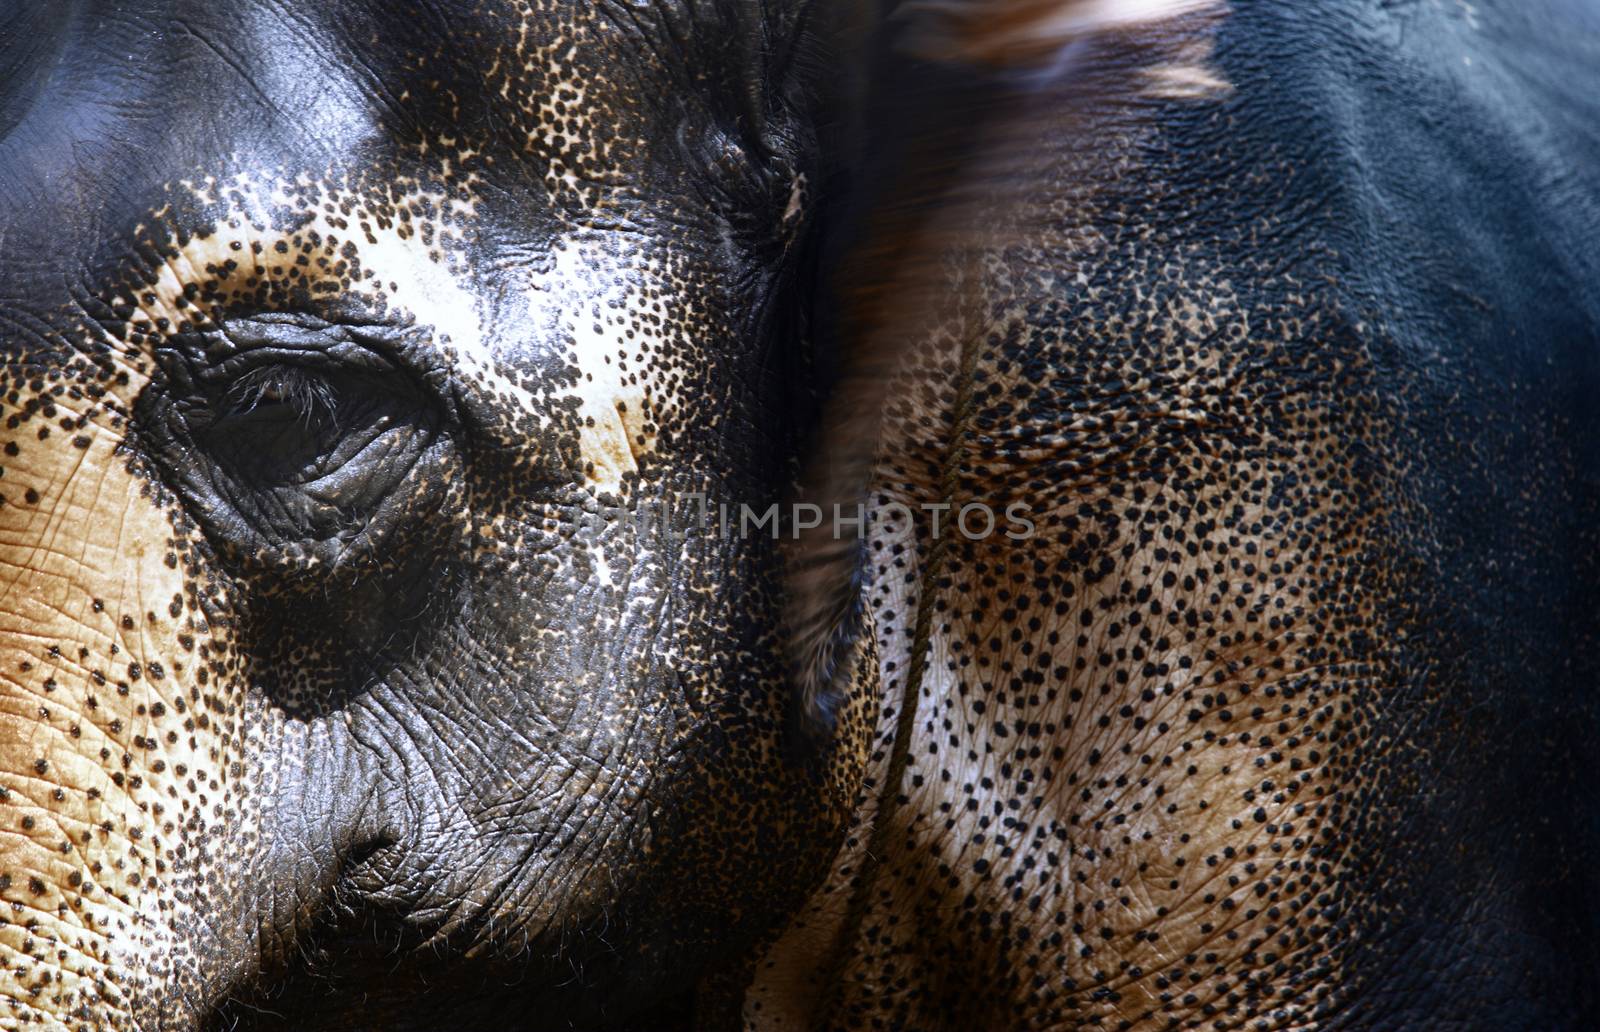 Indian Elephant by Novic